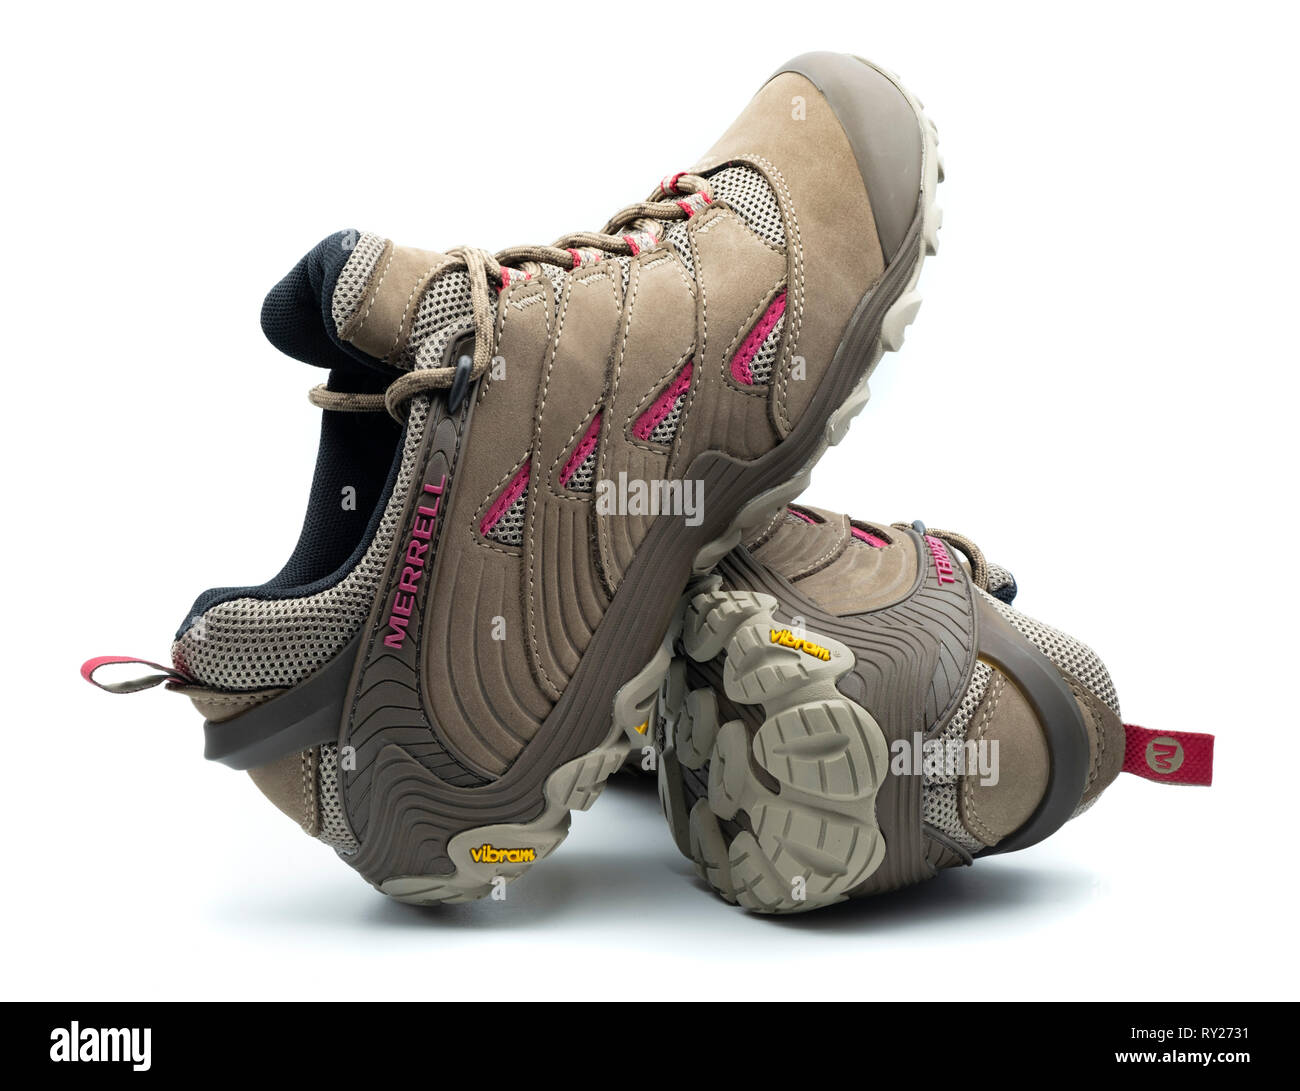 Une paire de chaussures de randonnée Merrell brown avec semelles Vibram isolé sur fond blanc Banque D'Images